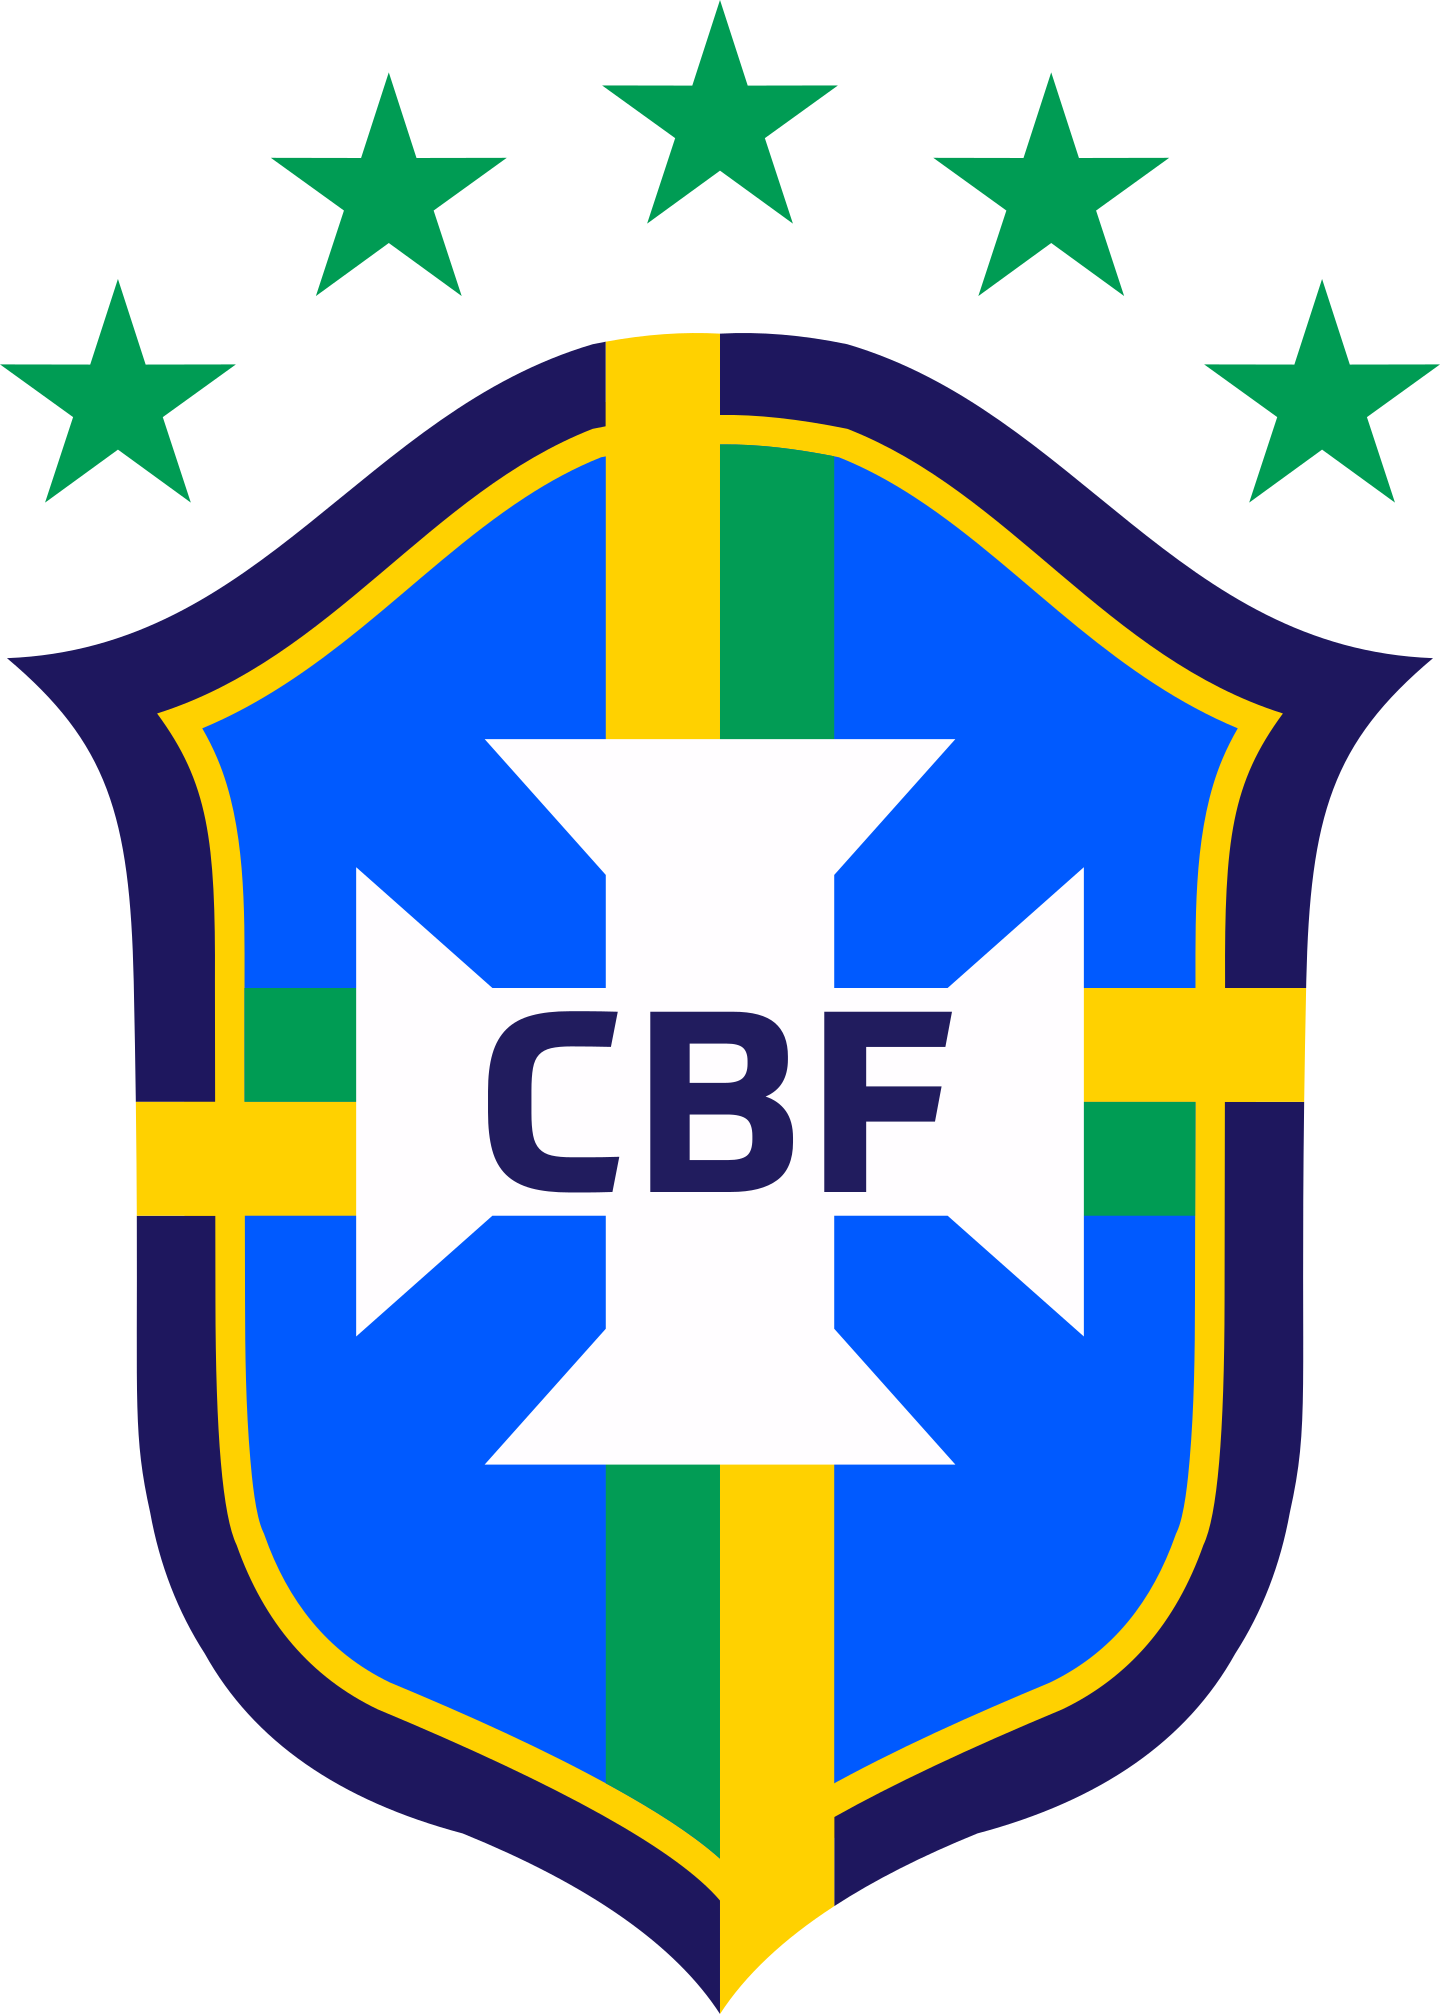 brazil national football team logo 3 - Brazil National Football Team Logo